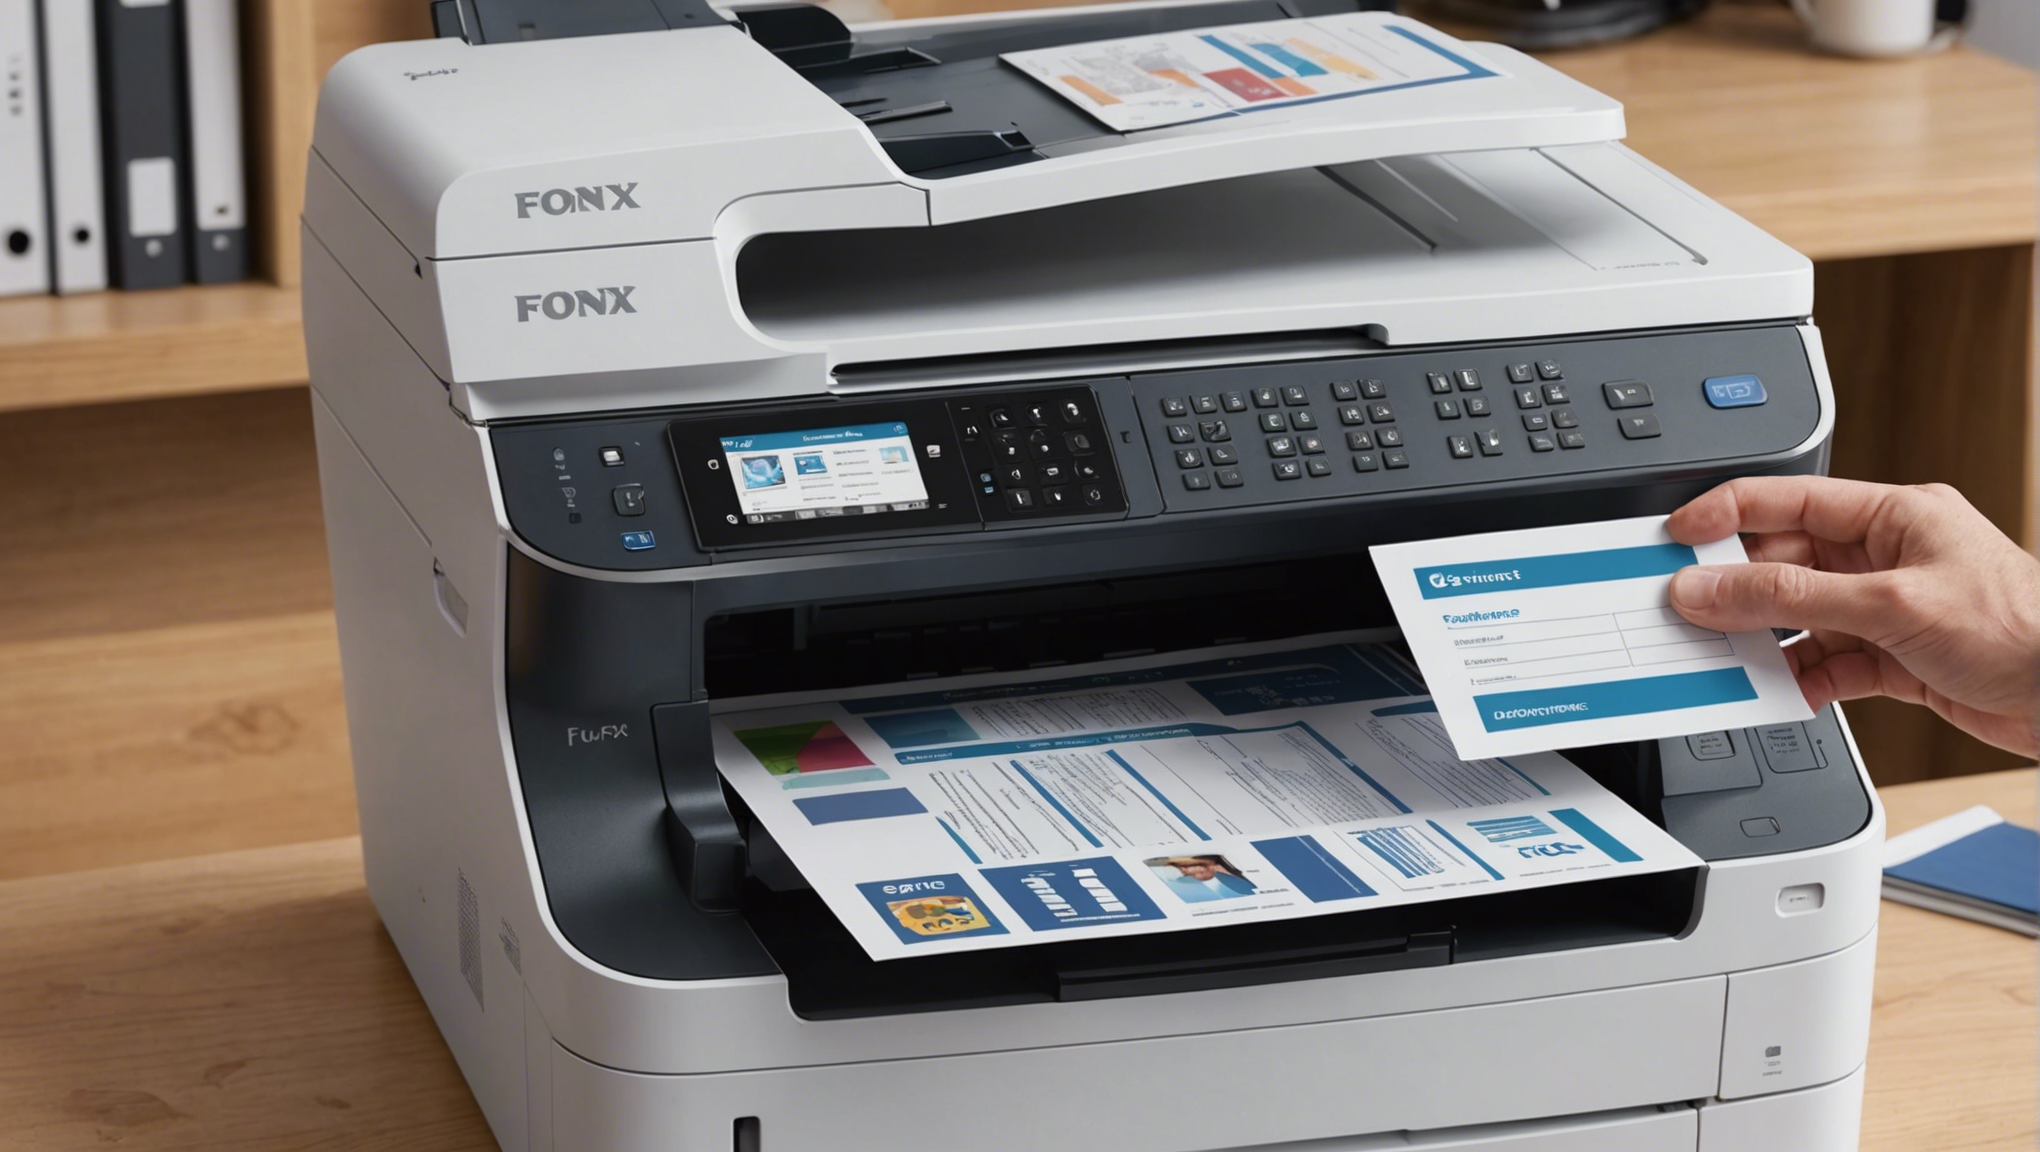 découvrez notre gamme d'imprimantes professionnelles à prix abordables, dotées de fonctions de fax pour vous accompagner dans tous vos besoins d'impression.